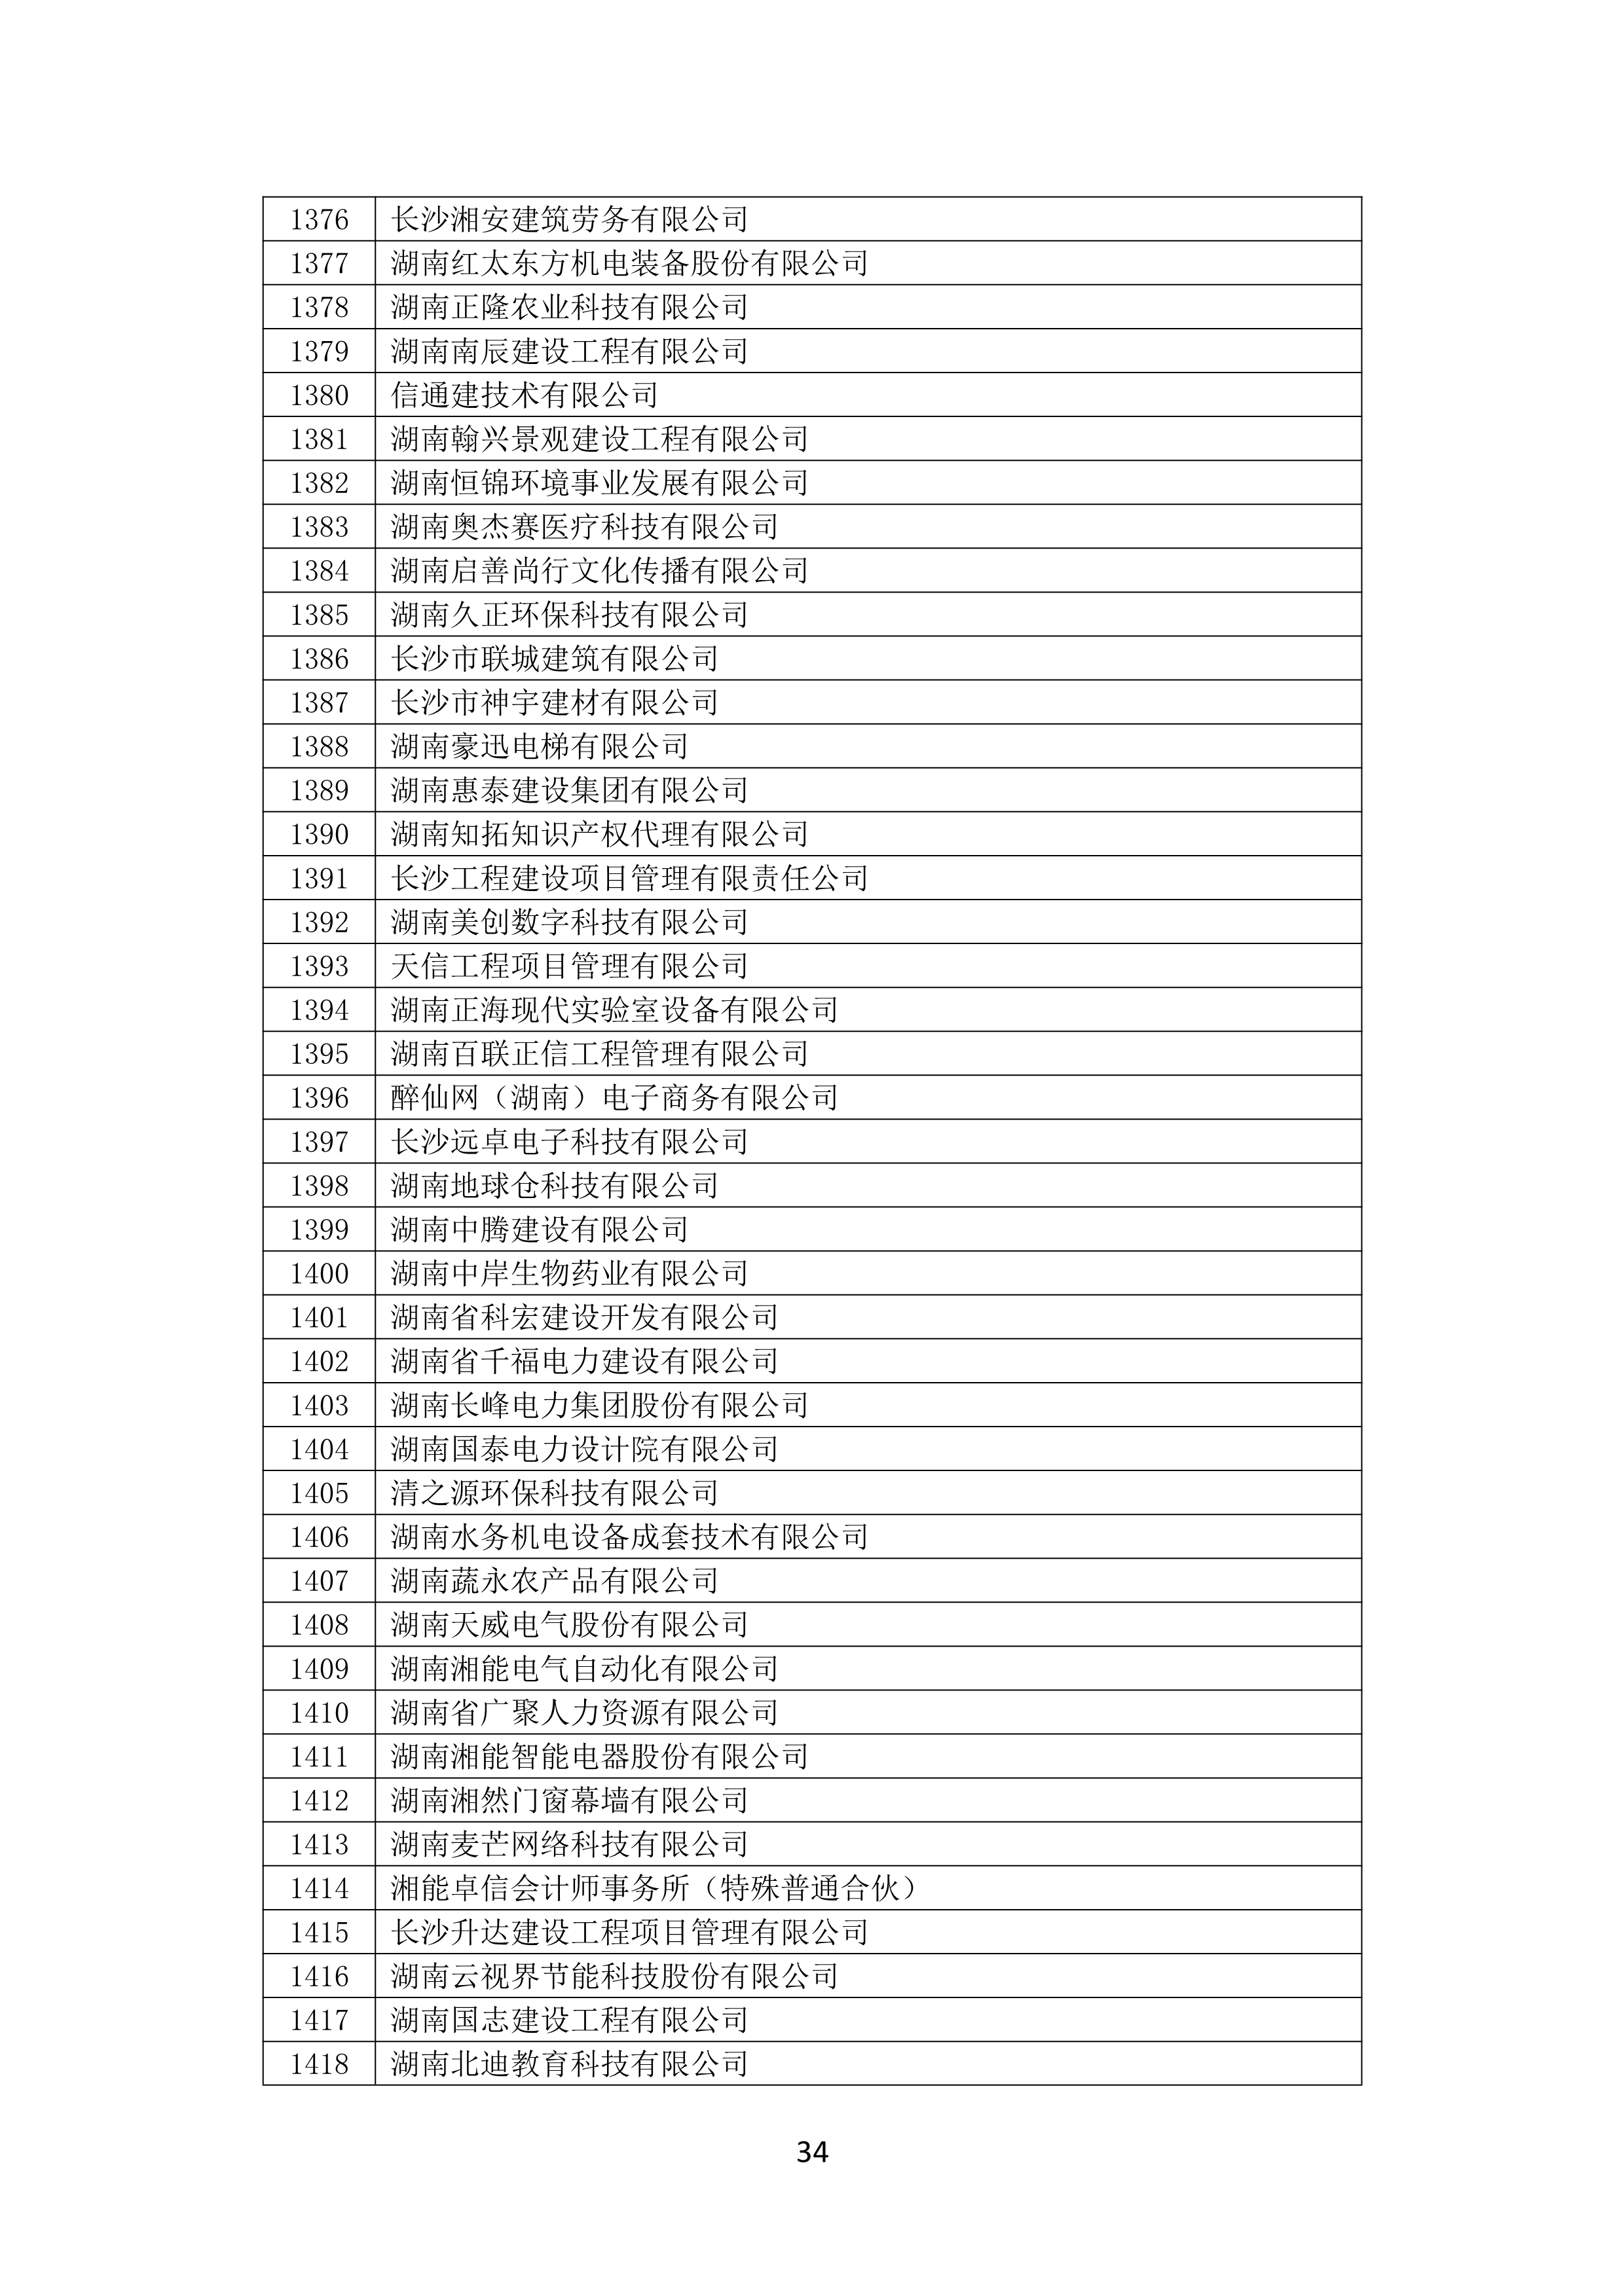 2021 年(nián)度湖南省守合同重信用企業名單_35.png